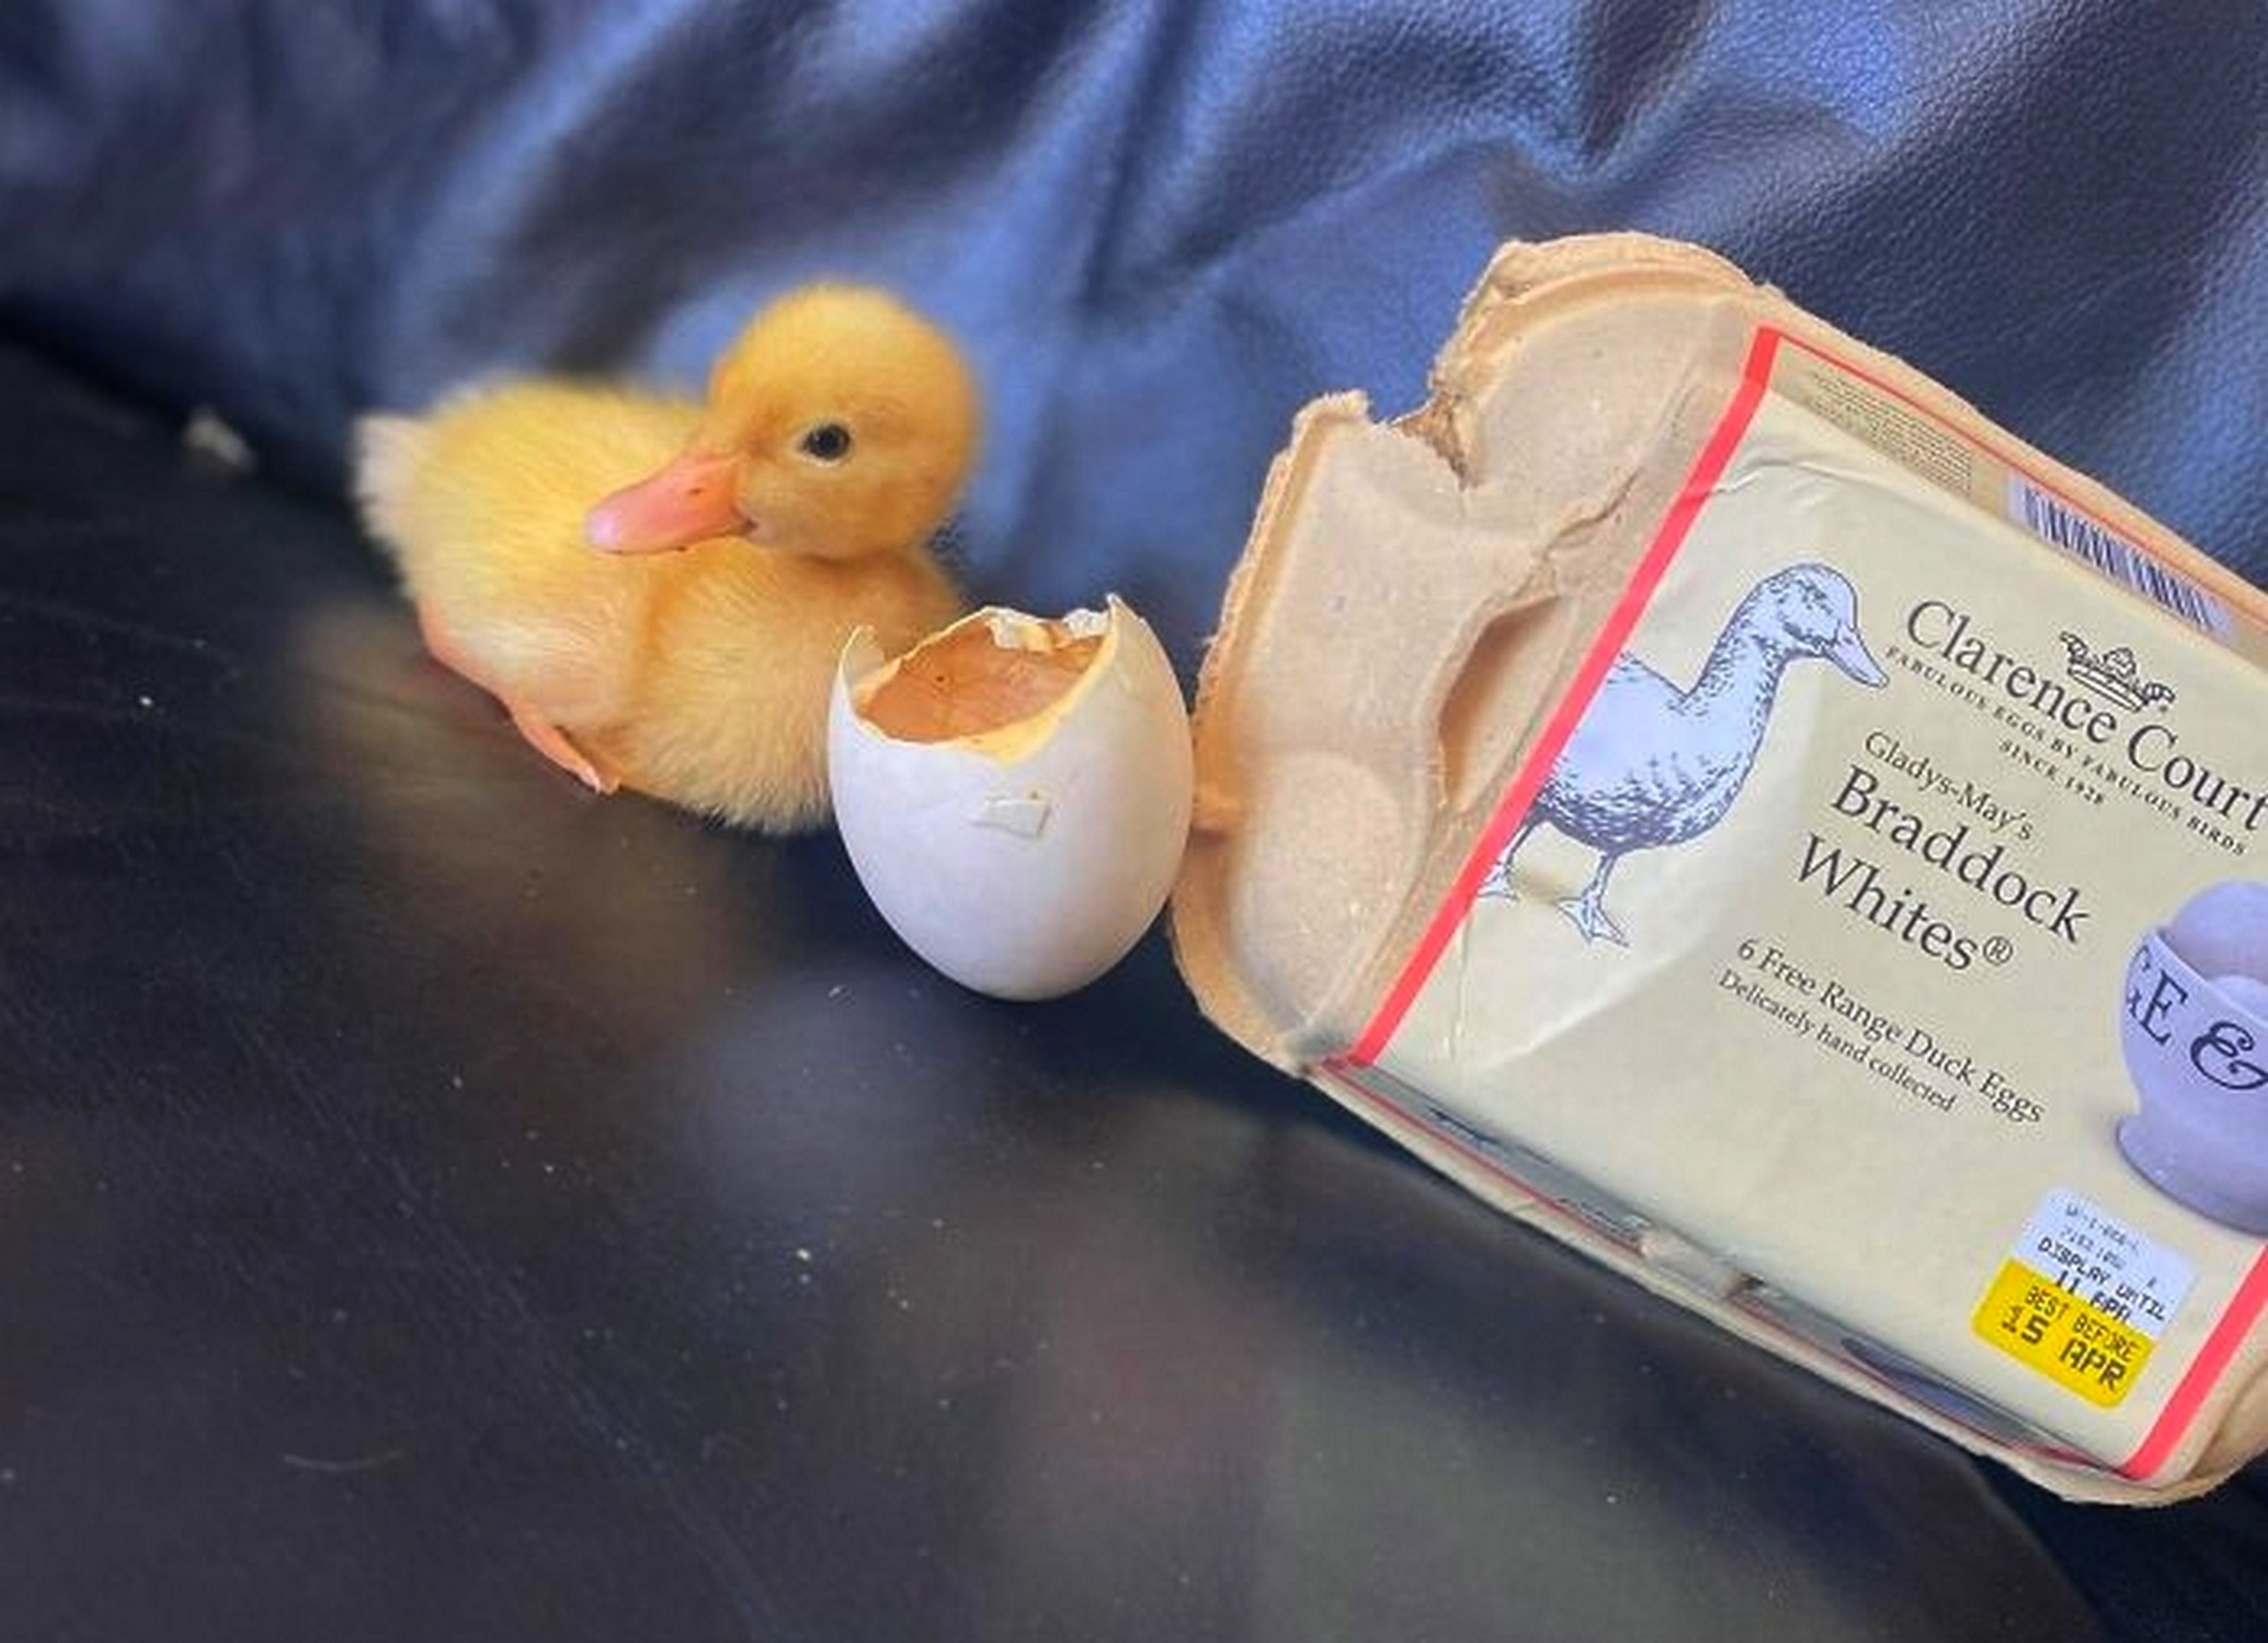 El penúltimo viral de TikTok: criar patos con los huevos del supermercado